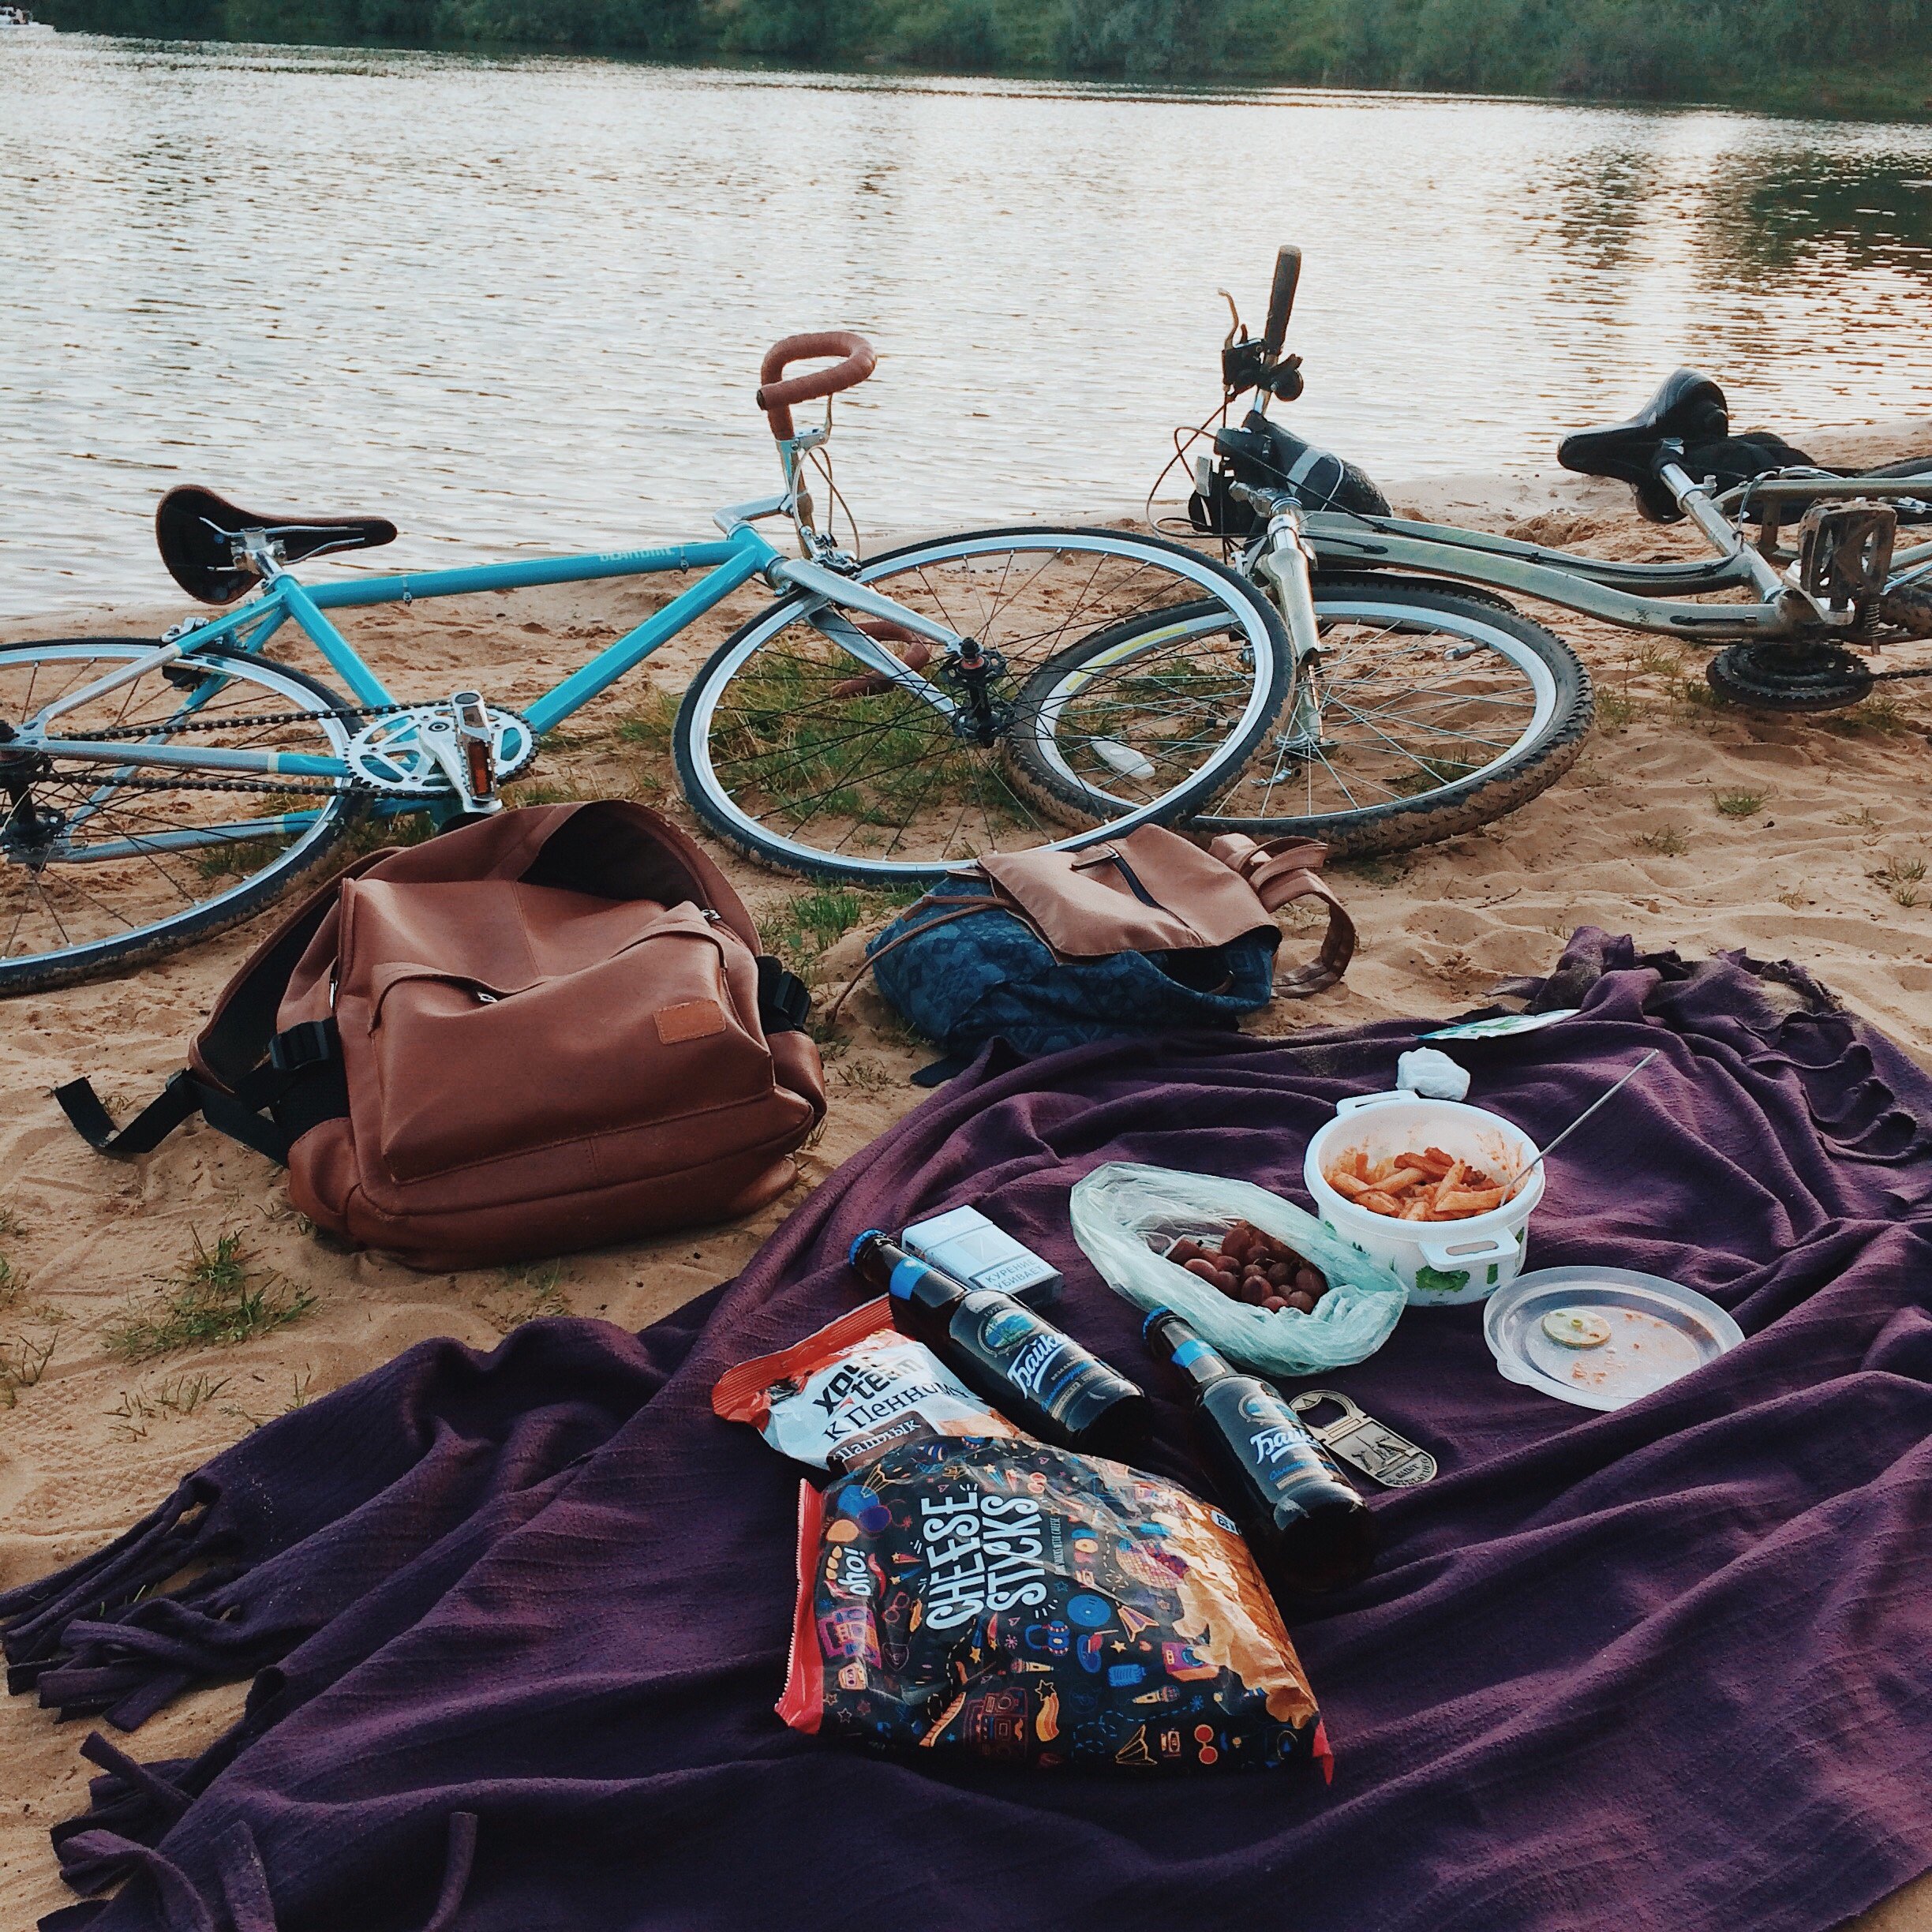 Toalha na areia com alguns alimentos e ao lado duas bicicletas de frente para o lago